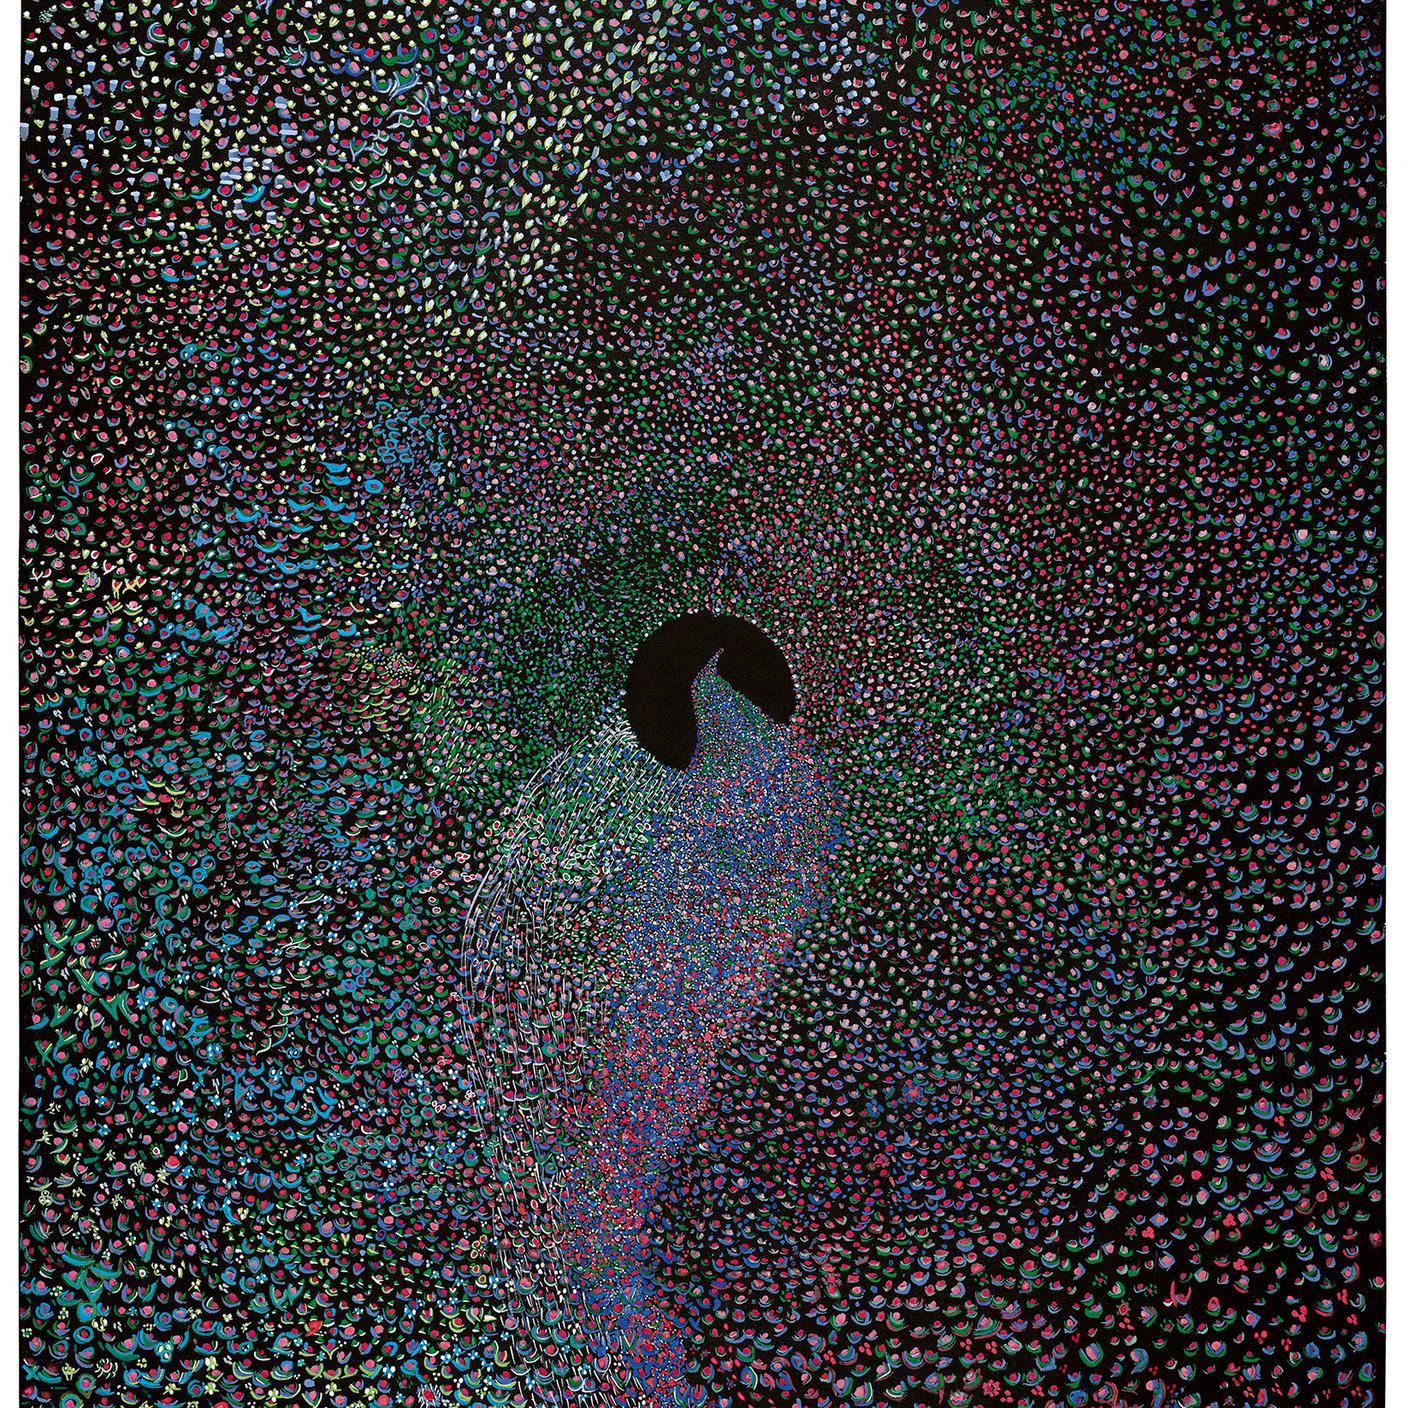 "Un tema solitario en la musica de las esferas", Magalí Herrera, 1968, inchiostro di china e tempera su carta nera